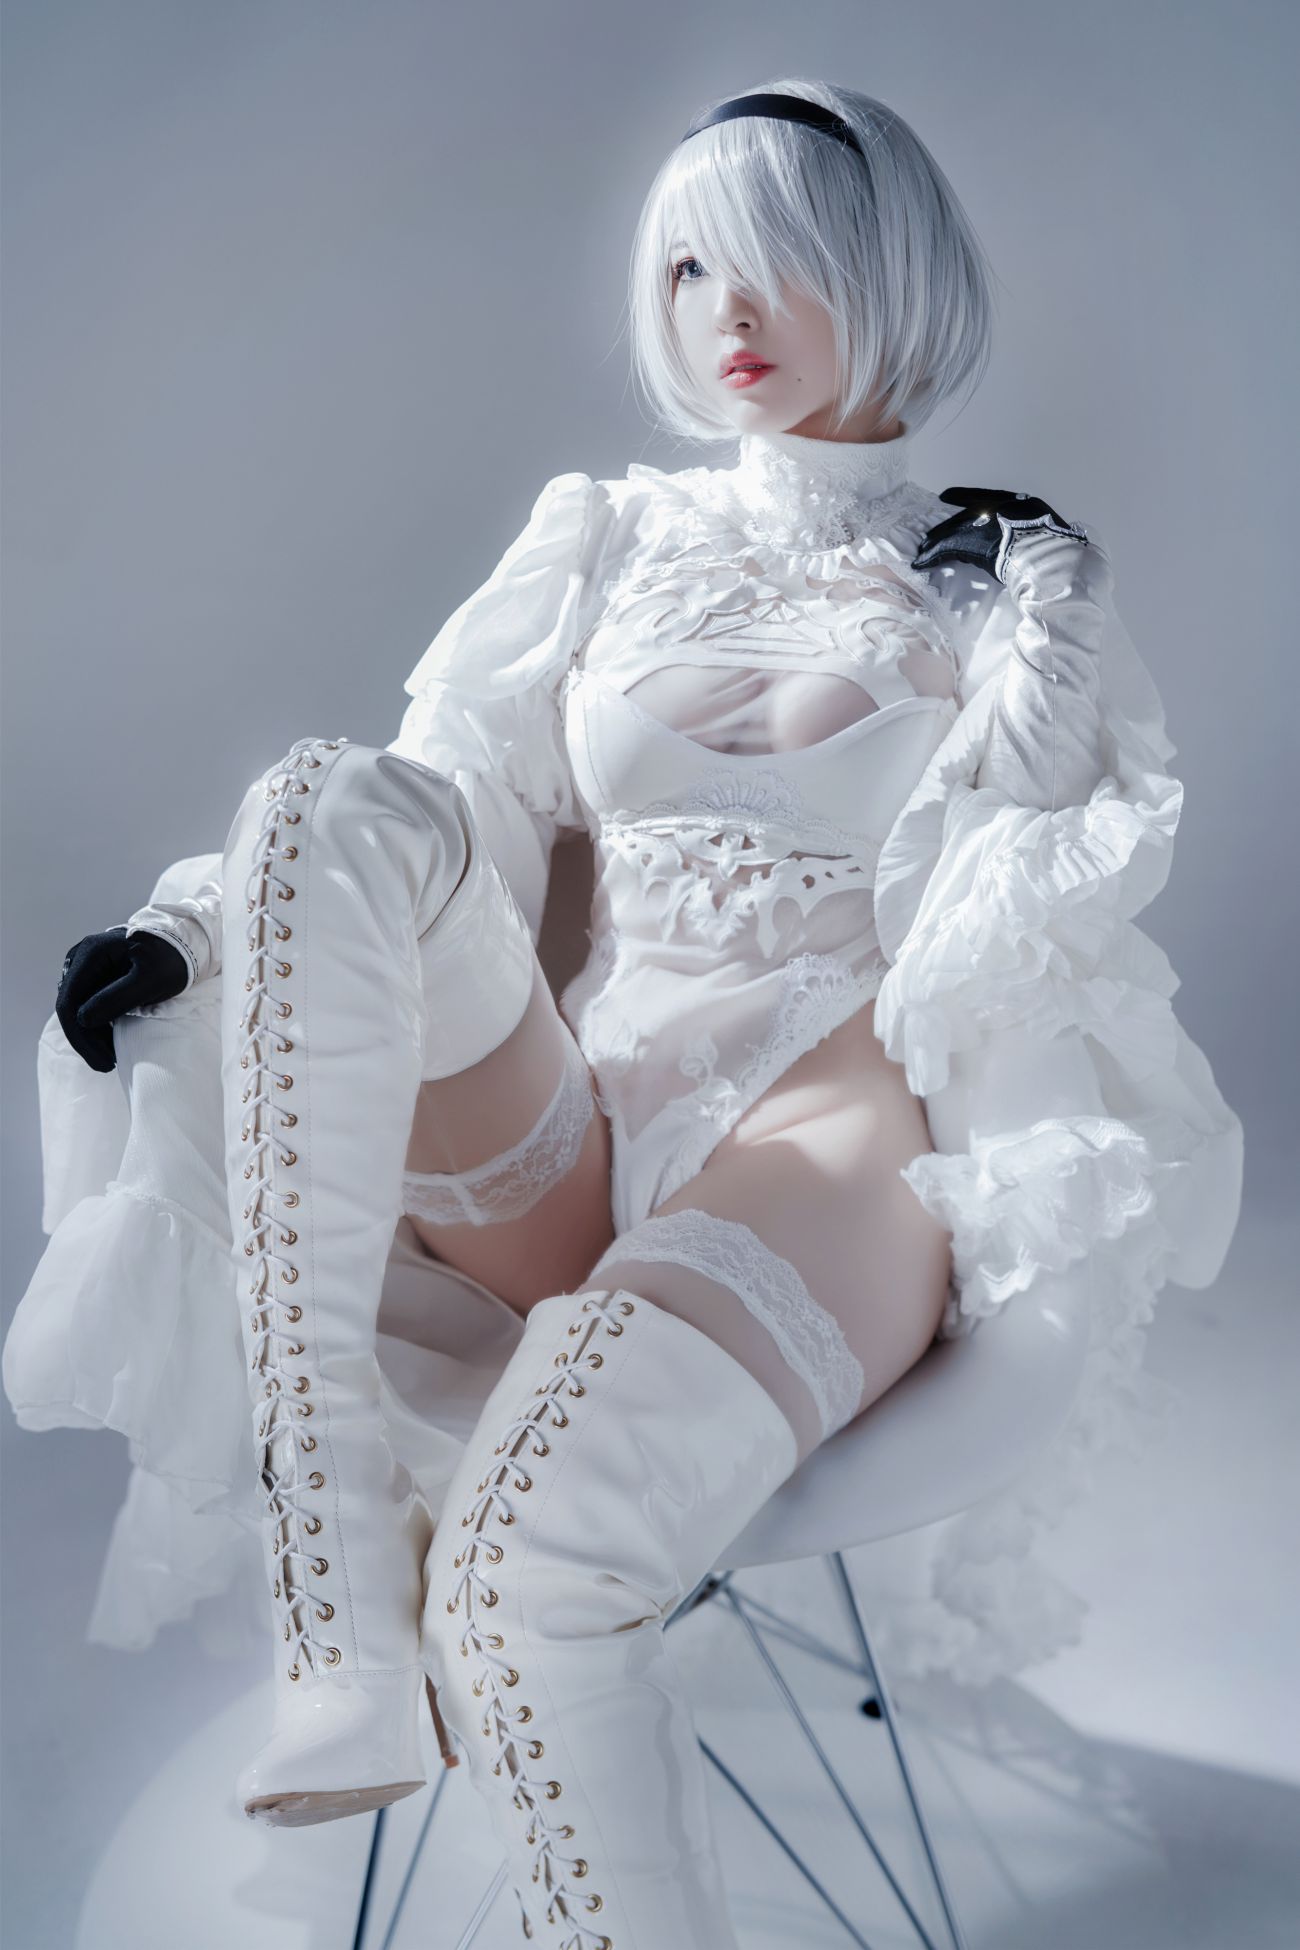 微博美少女半半子Cosplay性感写真Automataヨルハ二号B型 白いドレス (27)